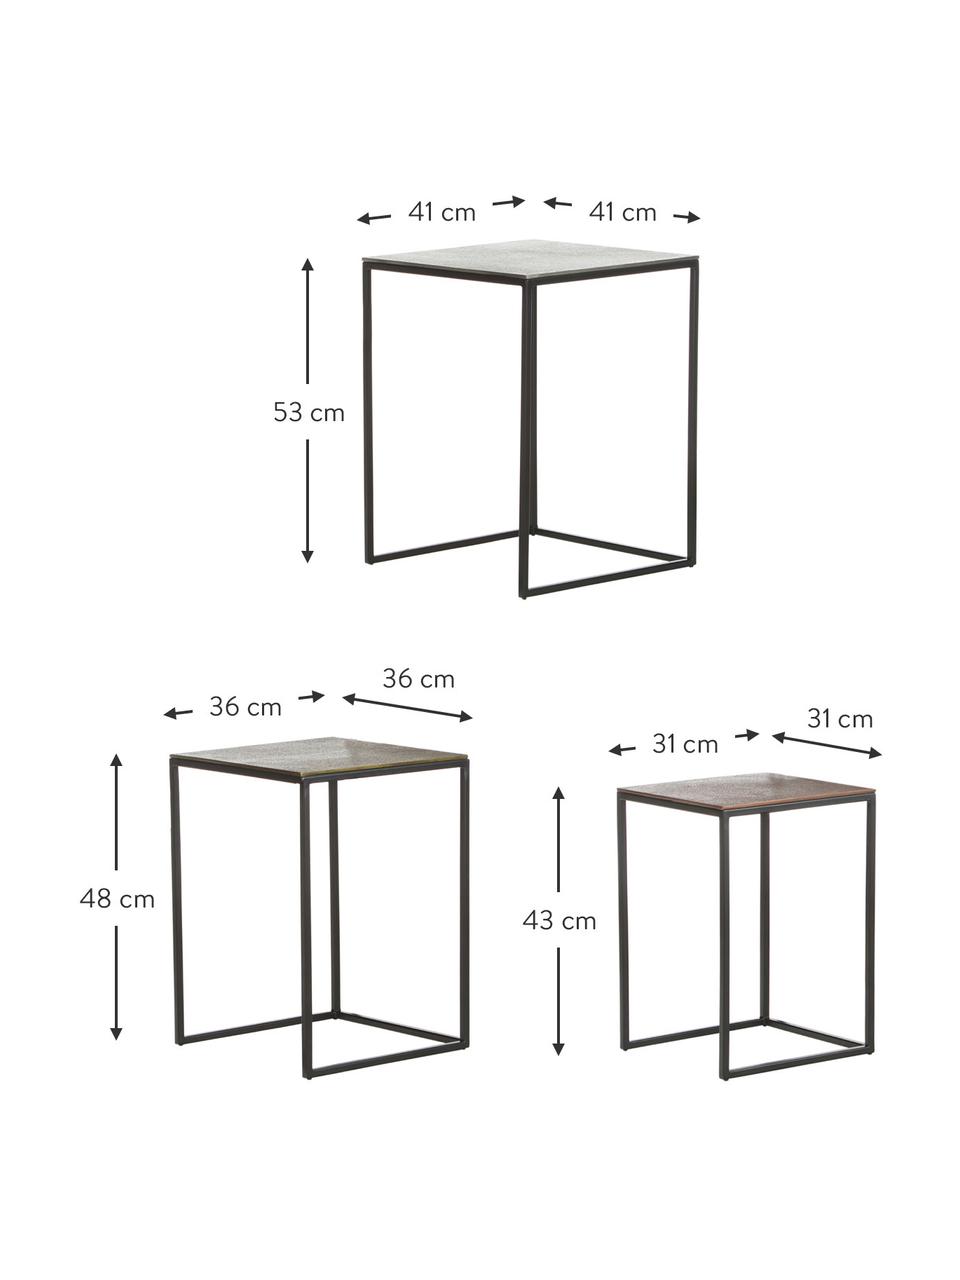 Komplet stolików pomocniczych Dwayne, 3 elem., Blat: aluminium powlekane, Stelaż: metal lakierowany, Odcienie srebrnego, odcienie mosiądzu, brązowy, Komplet z różnymi rozmiarami